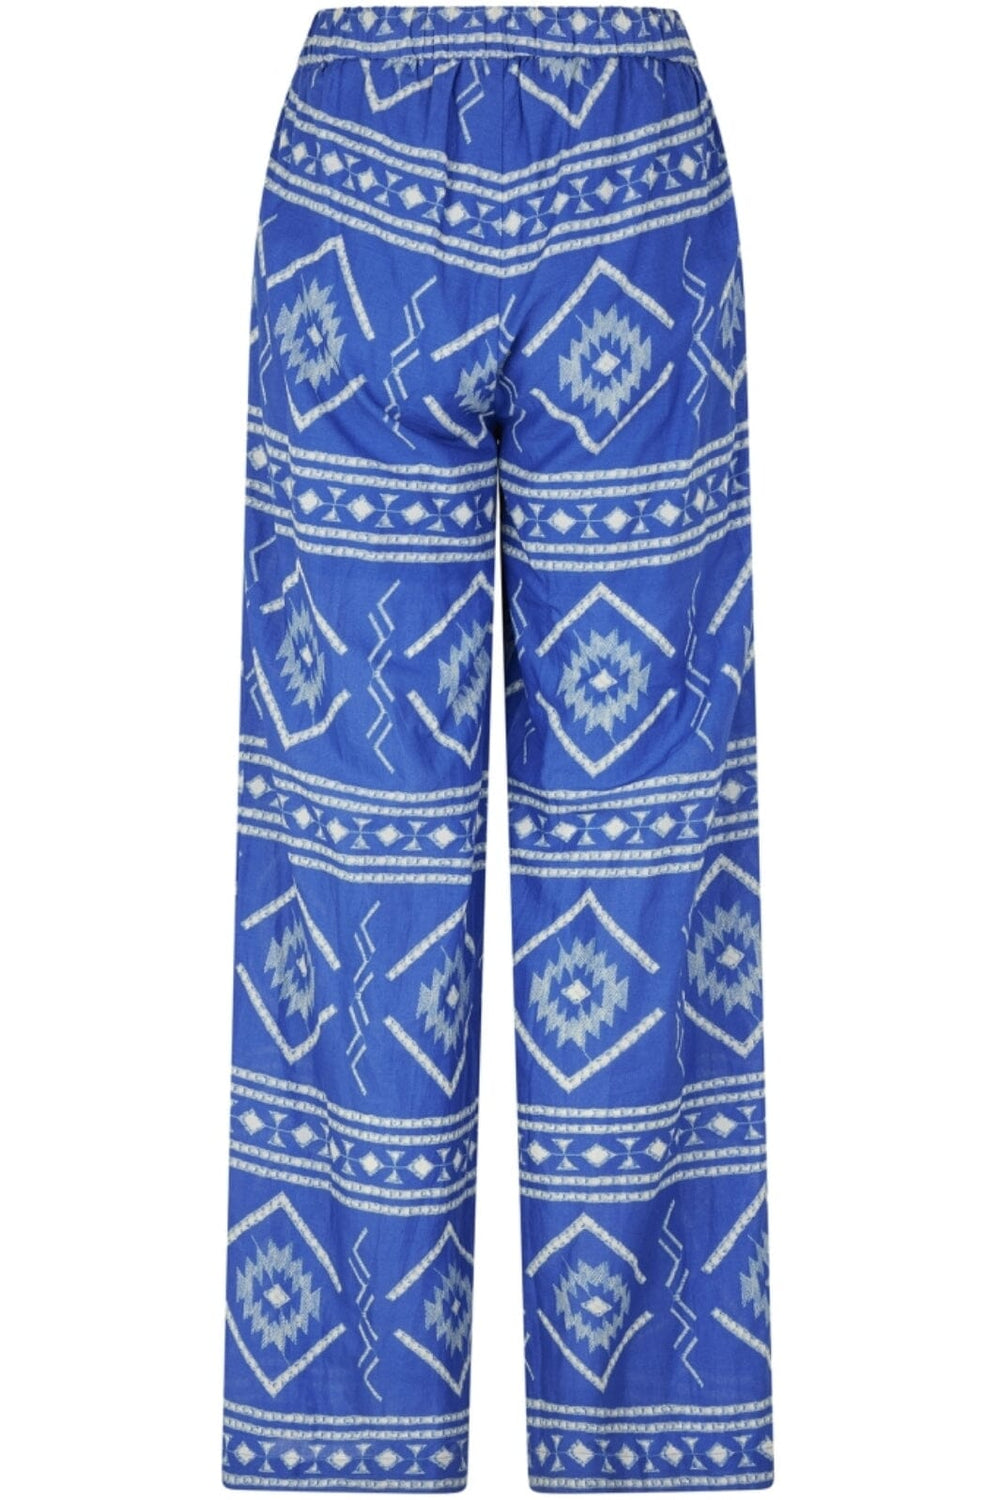 Lollys Laundry - RitaLL Pants - 20 Blue Bukser 